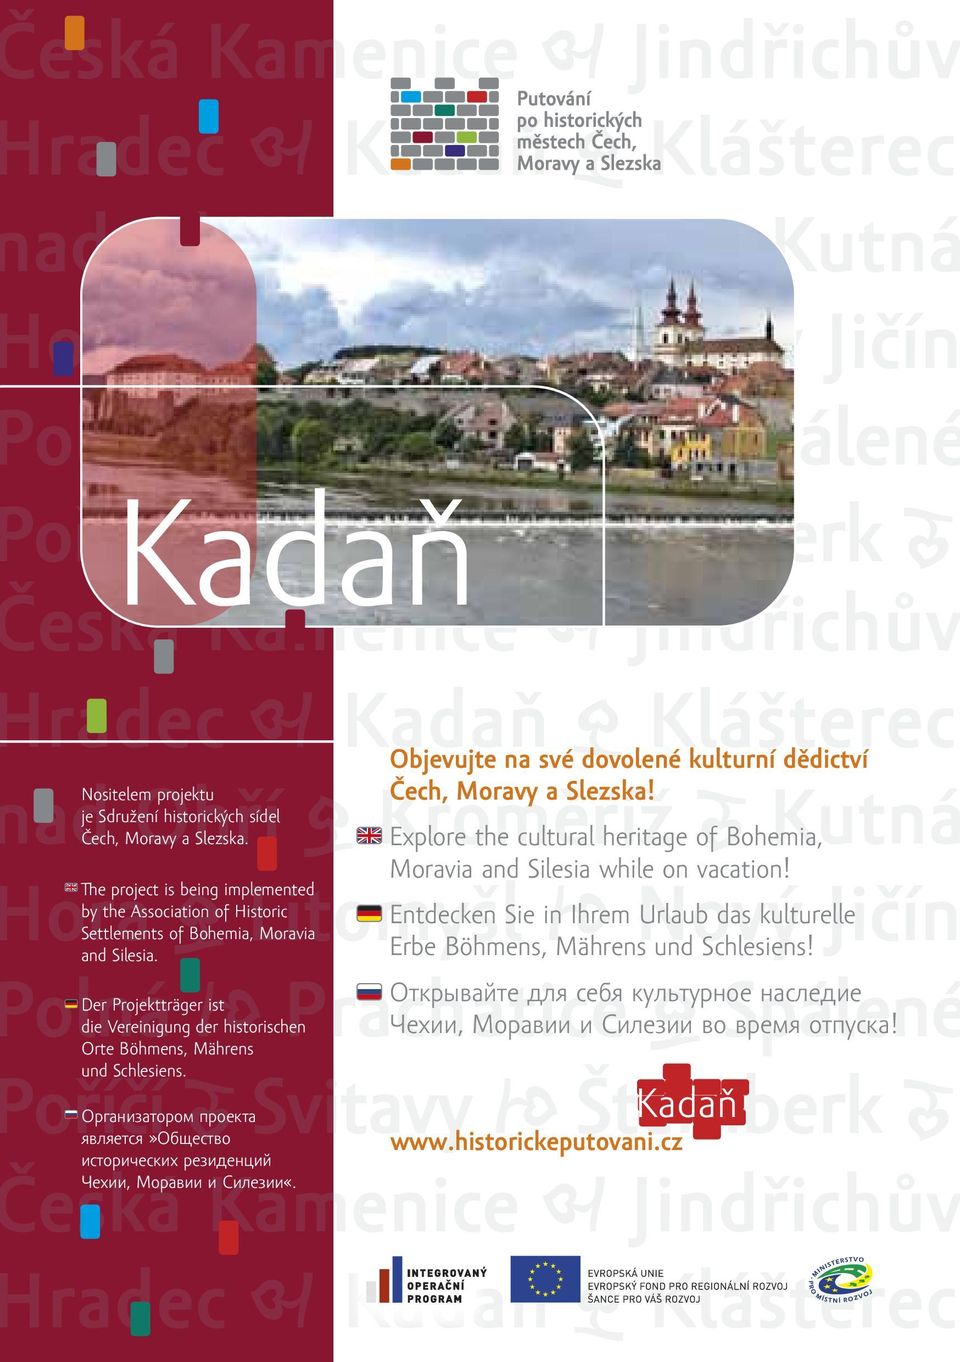 Prachatice Открывайте для себя культурное G S наследие Чехии, Моравии и Силезии во время отпуска!